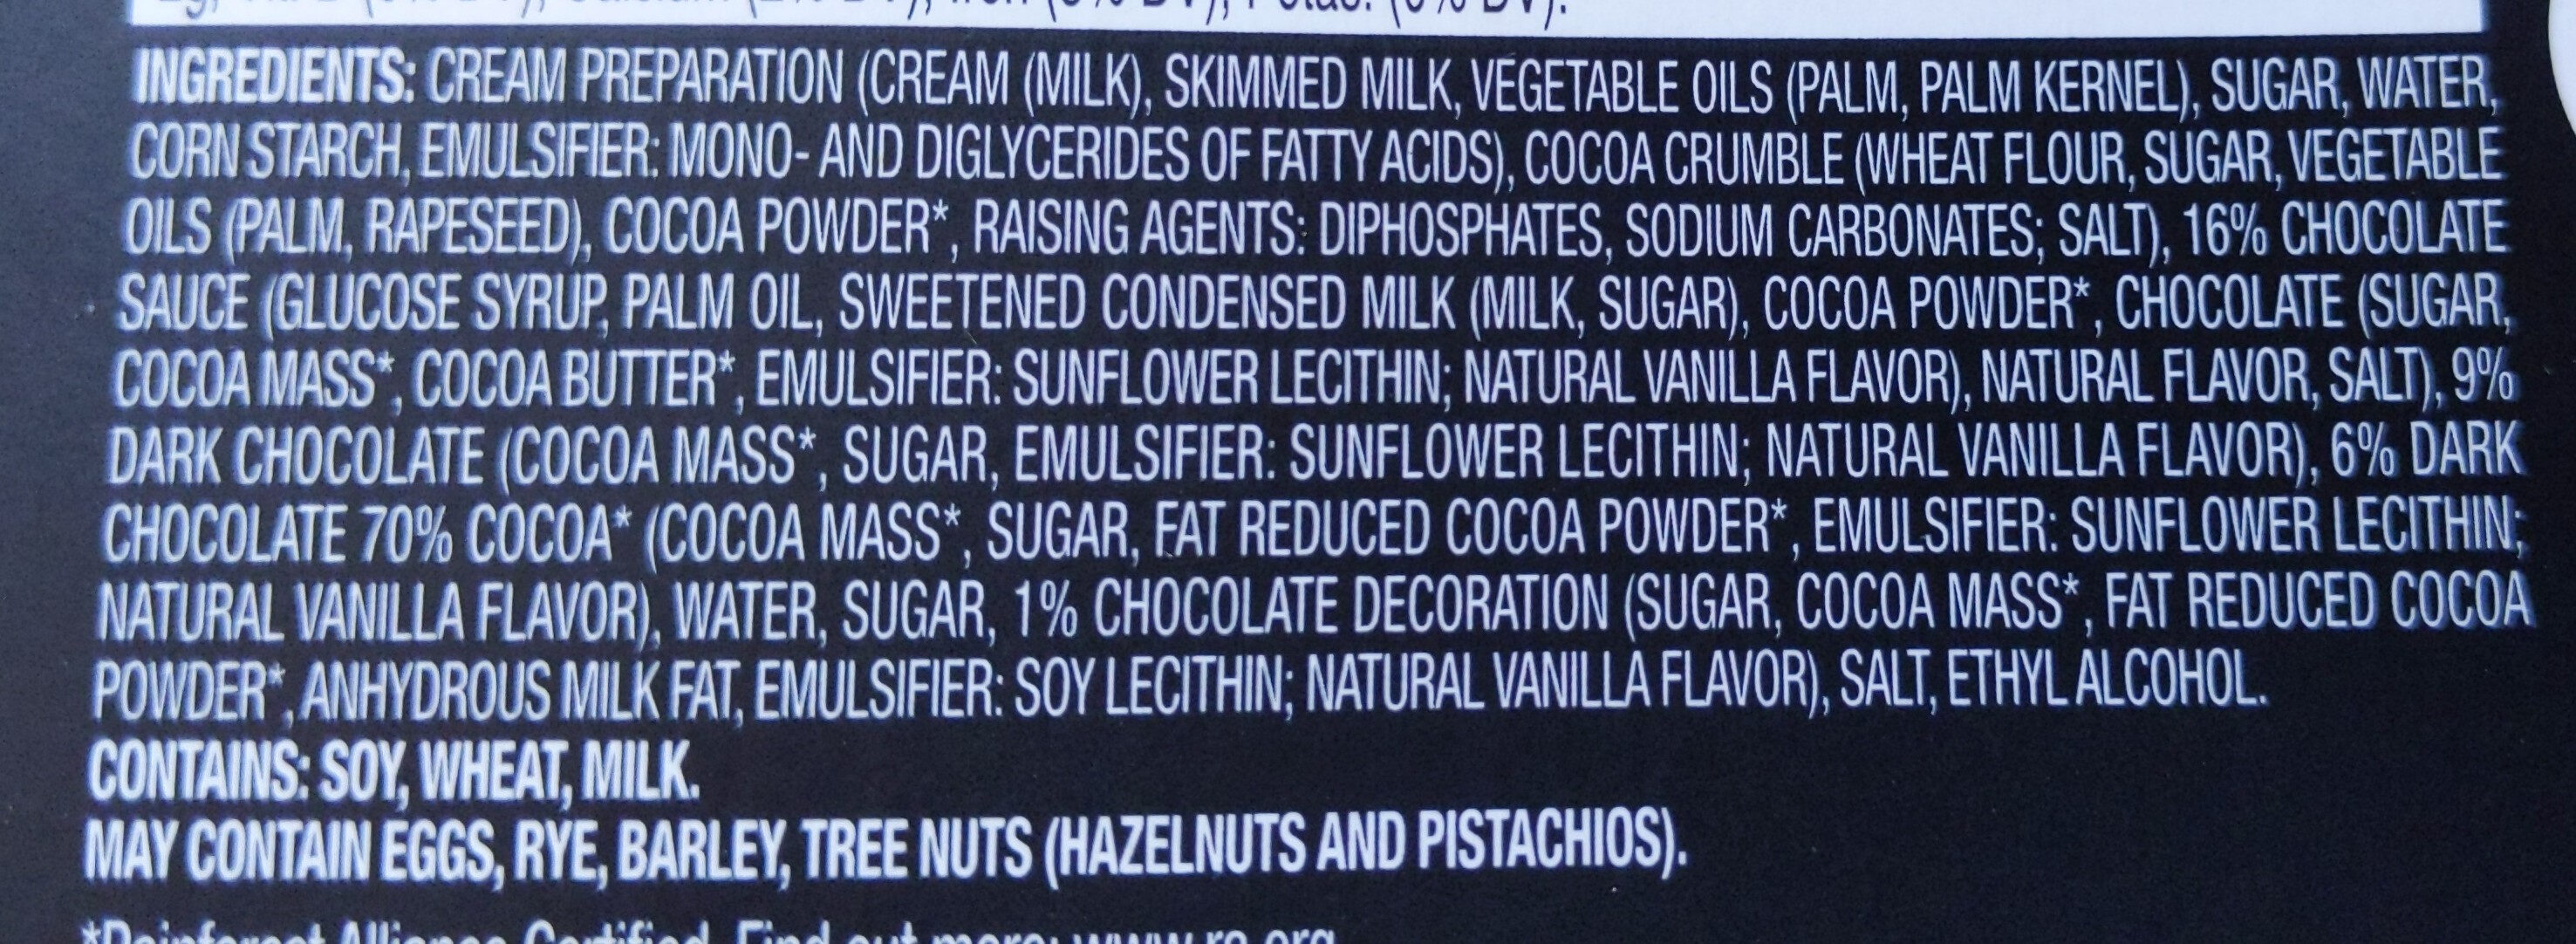 Chocolate desserts - Ingredients